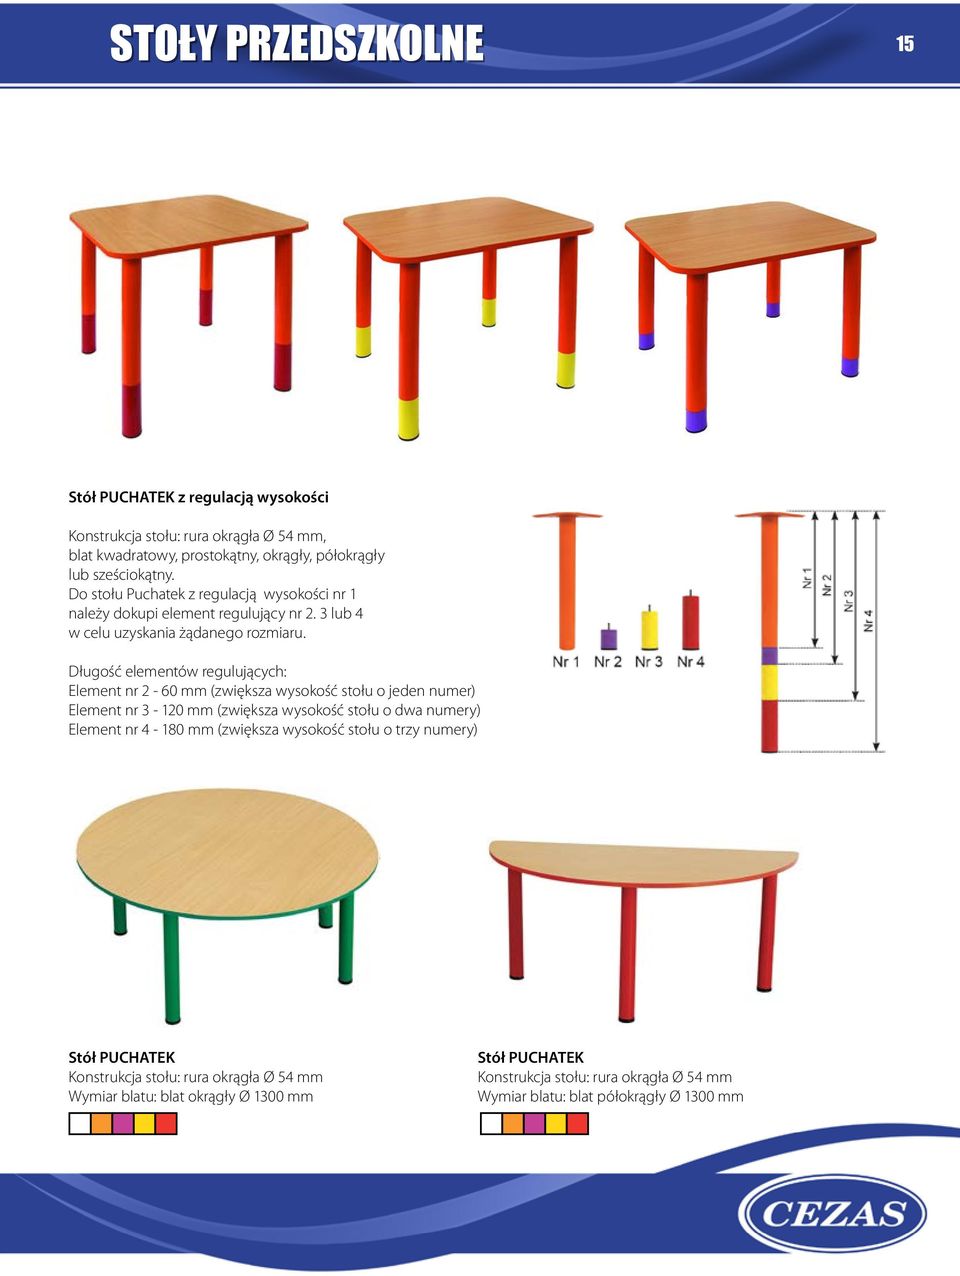 Długość elementów regulujących: Element nr 2-60 mm (zwiększa wysokość stołu o jeden numer) Element nr 3-120 mm (zwiększa wysokość stołu o dwa numery) Element nr 4-180 mm